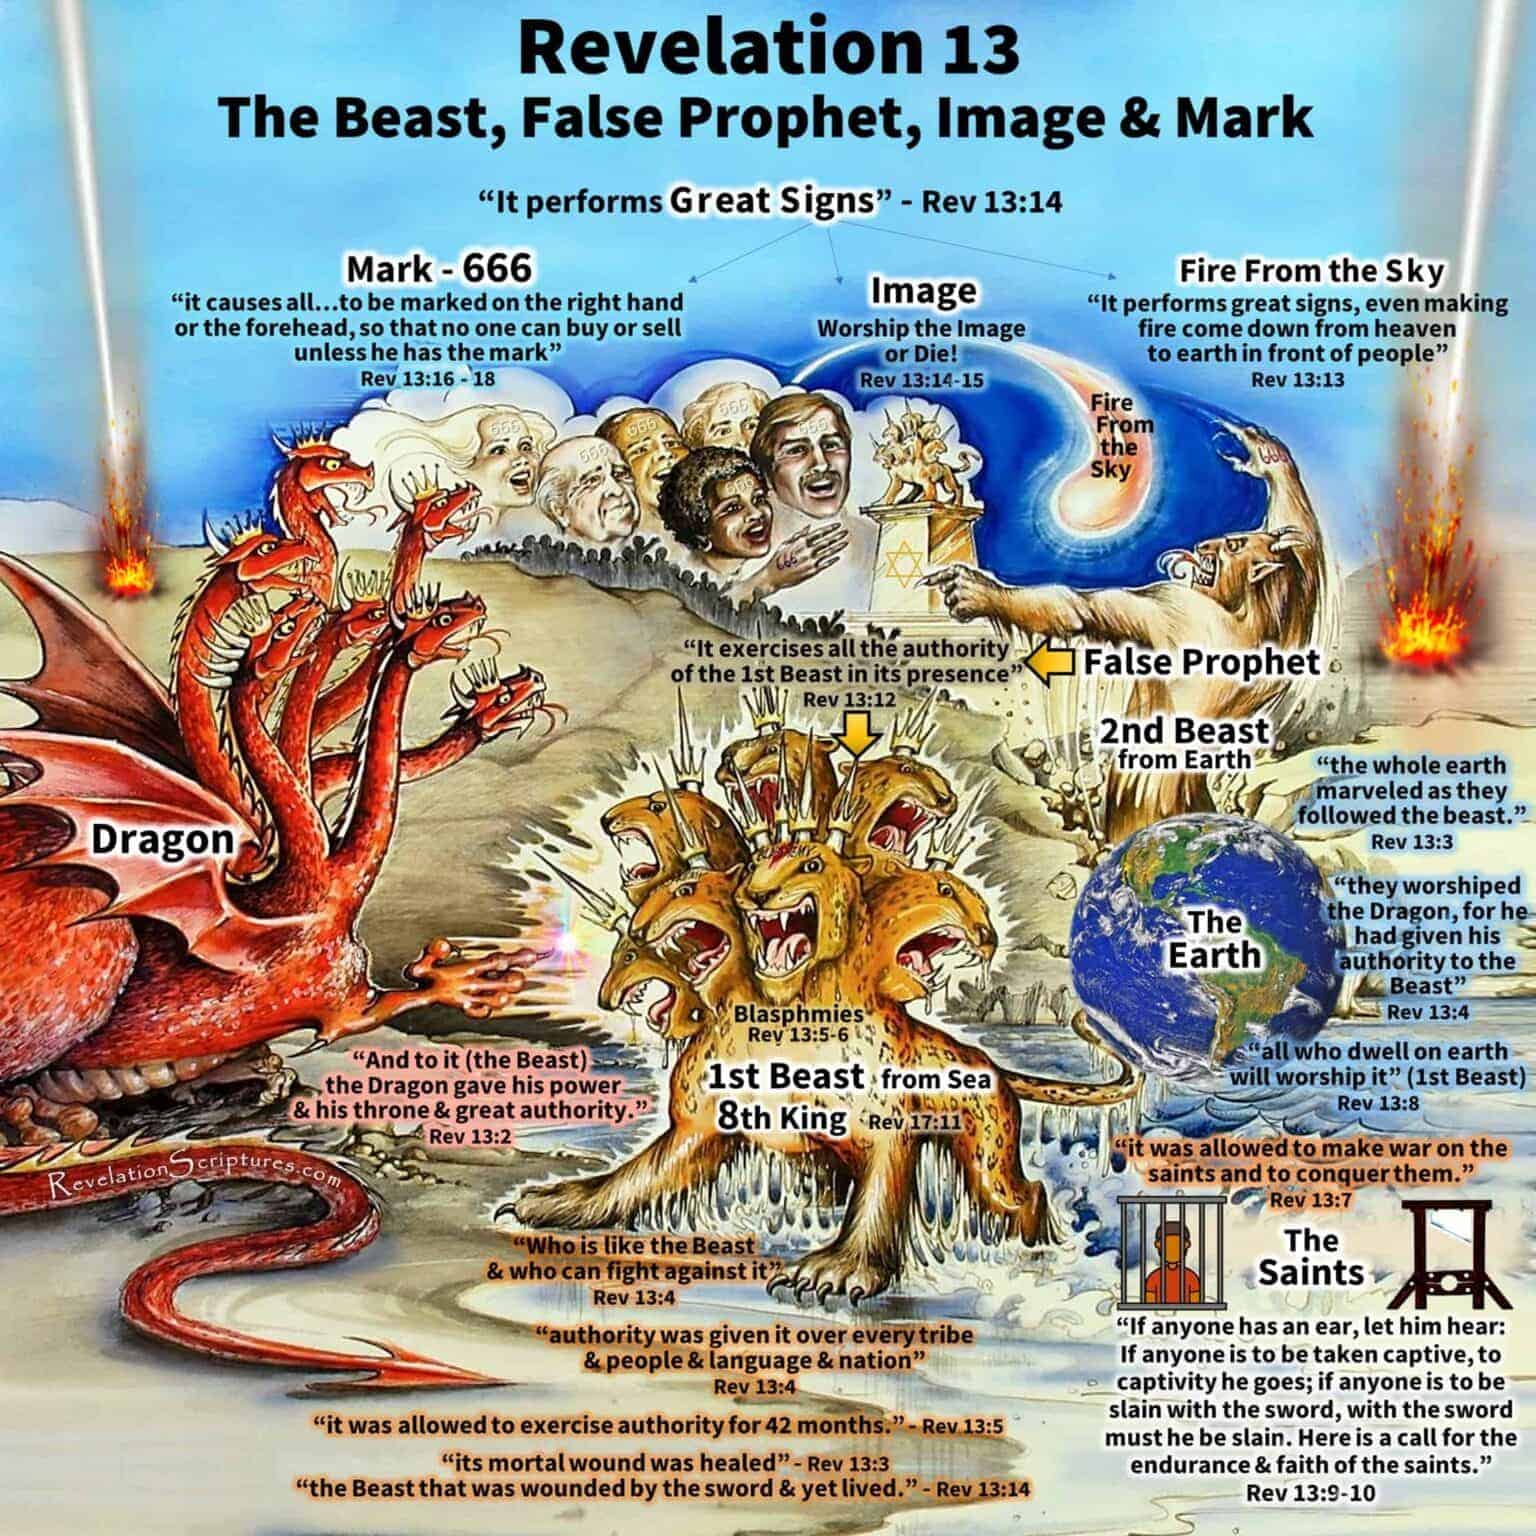 Revelation 13 
The Beast, False Prophet, Image and Mark